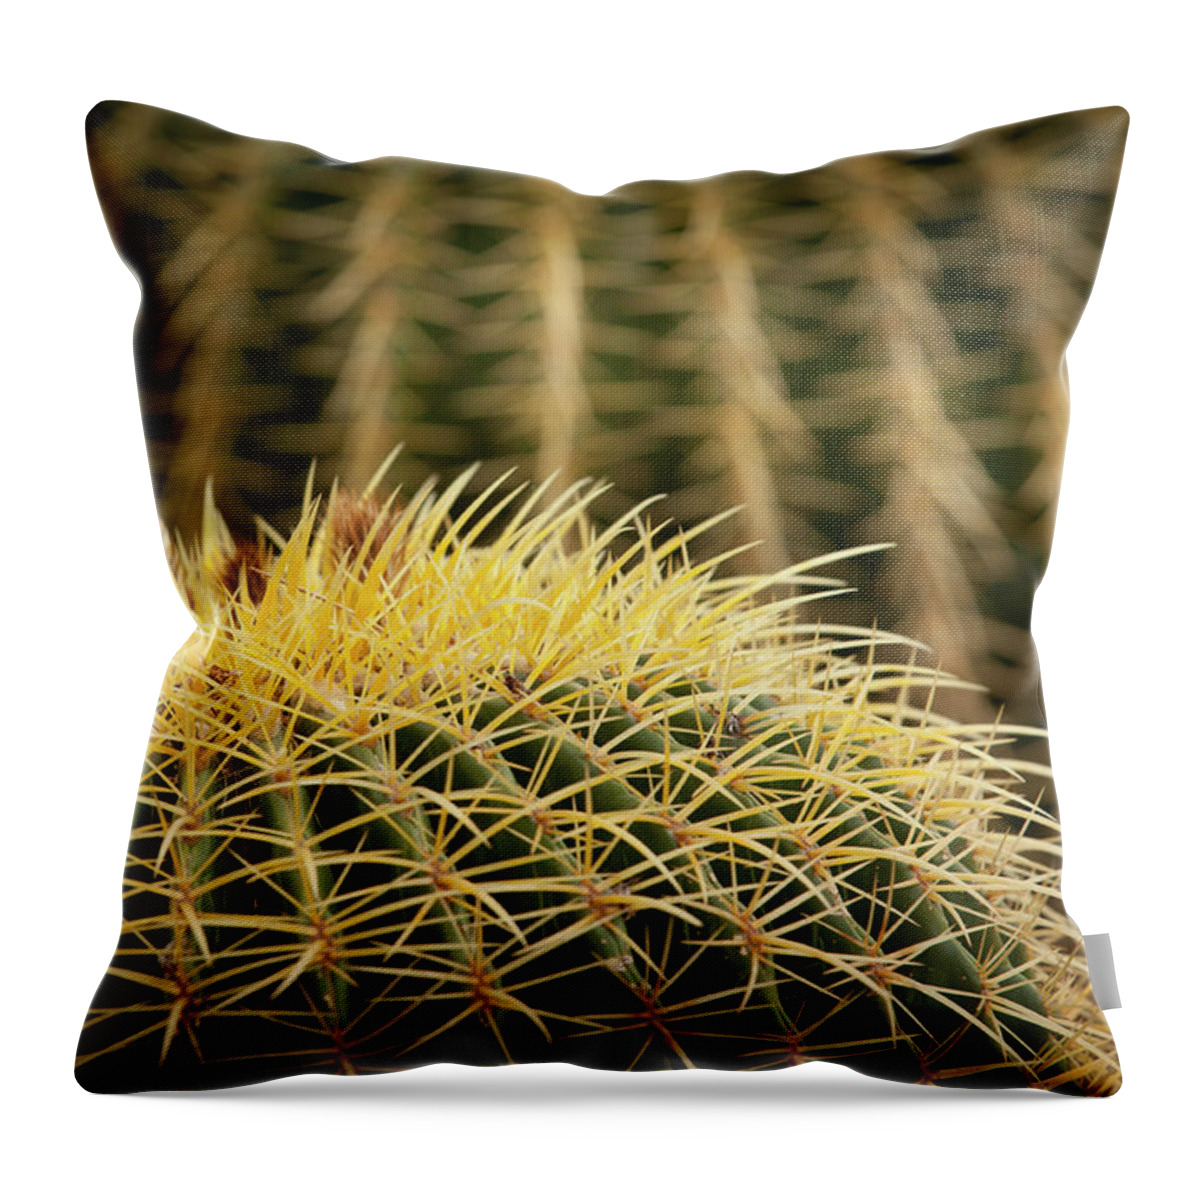 Cactus Throw Pillow featuring the photograph Textures of Arizona #10 by John Magyar Photography